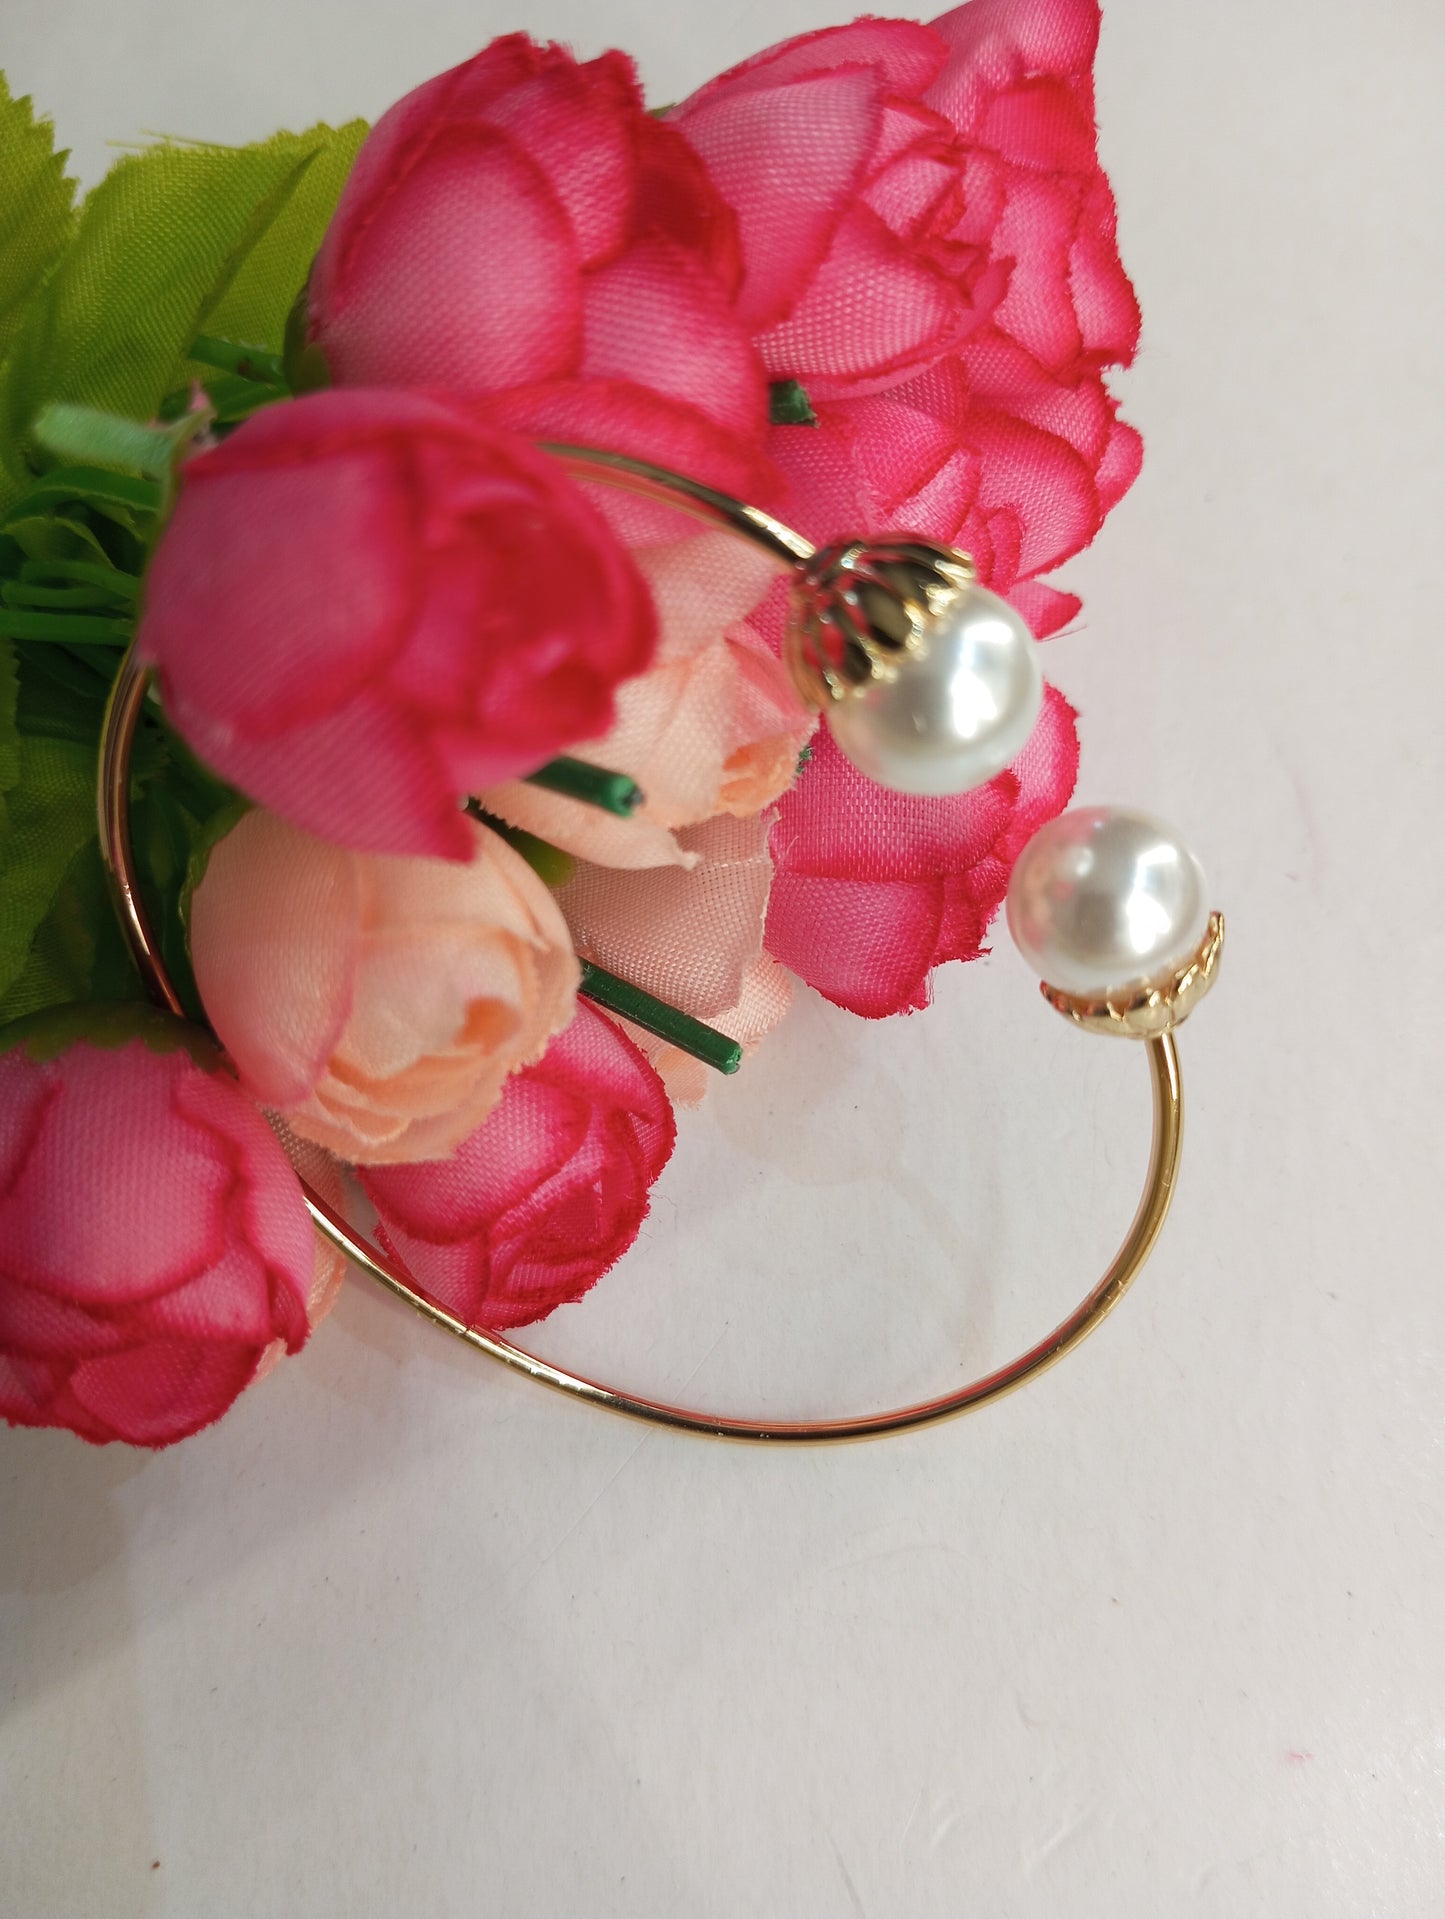 Golden Adjustable Bracelet with Pearls